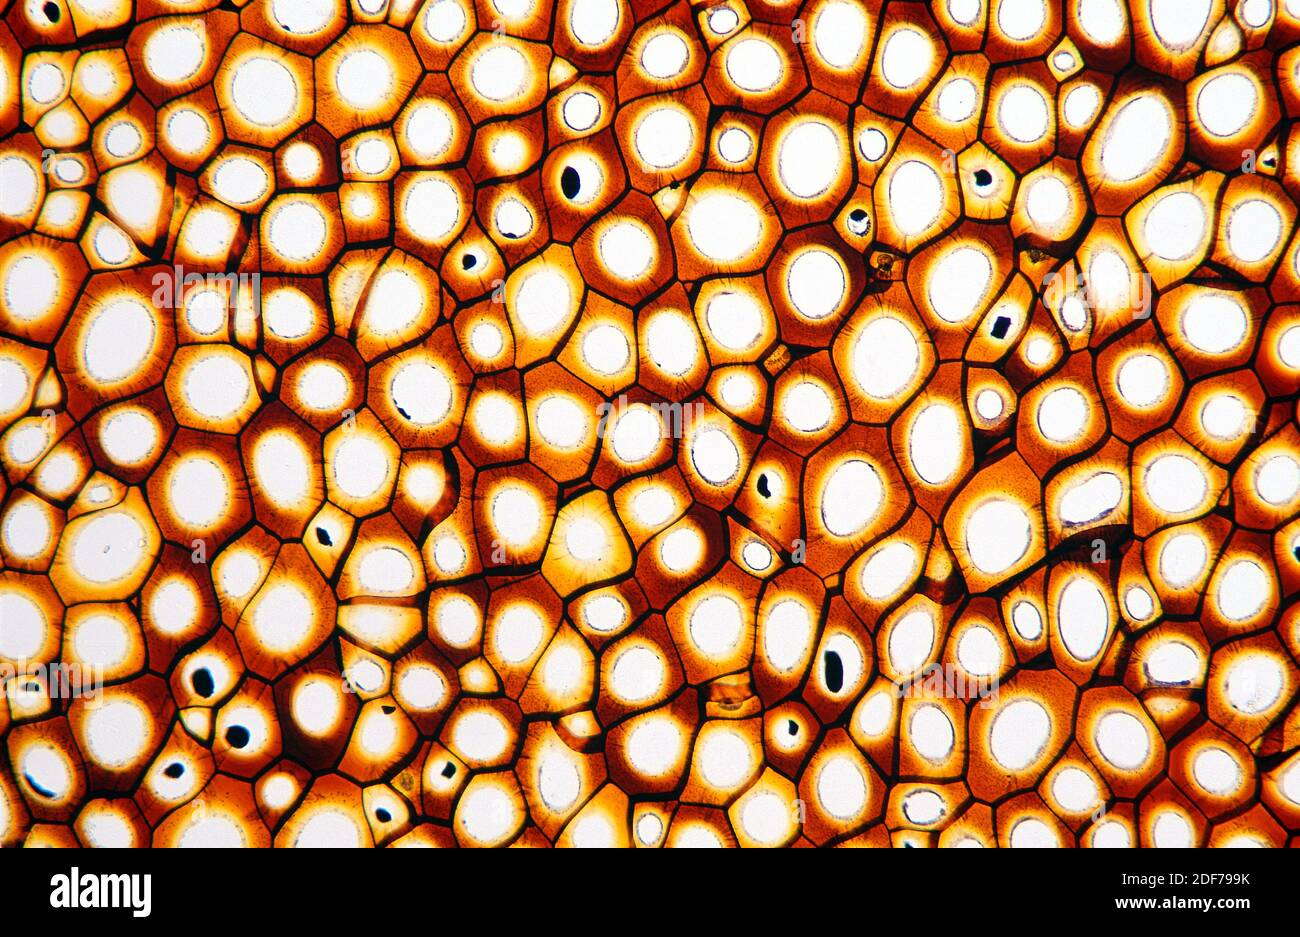 Los plasmodesmatas son túbulos microscópicos que interconectan las células. Fotomicrografía. Foto de stock